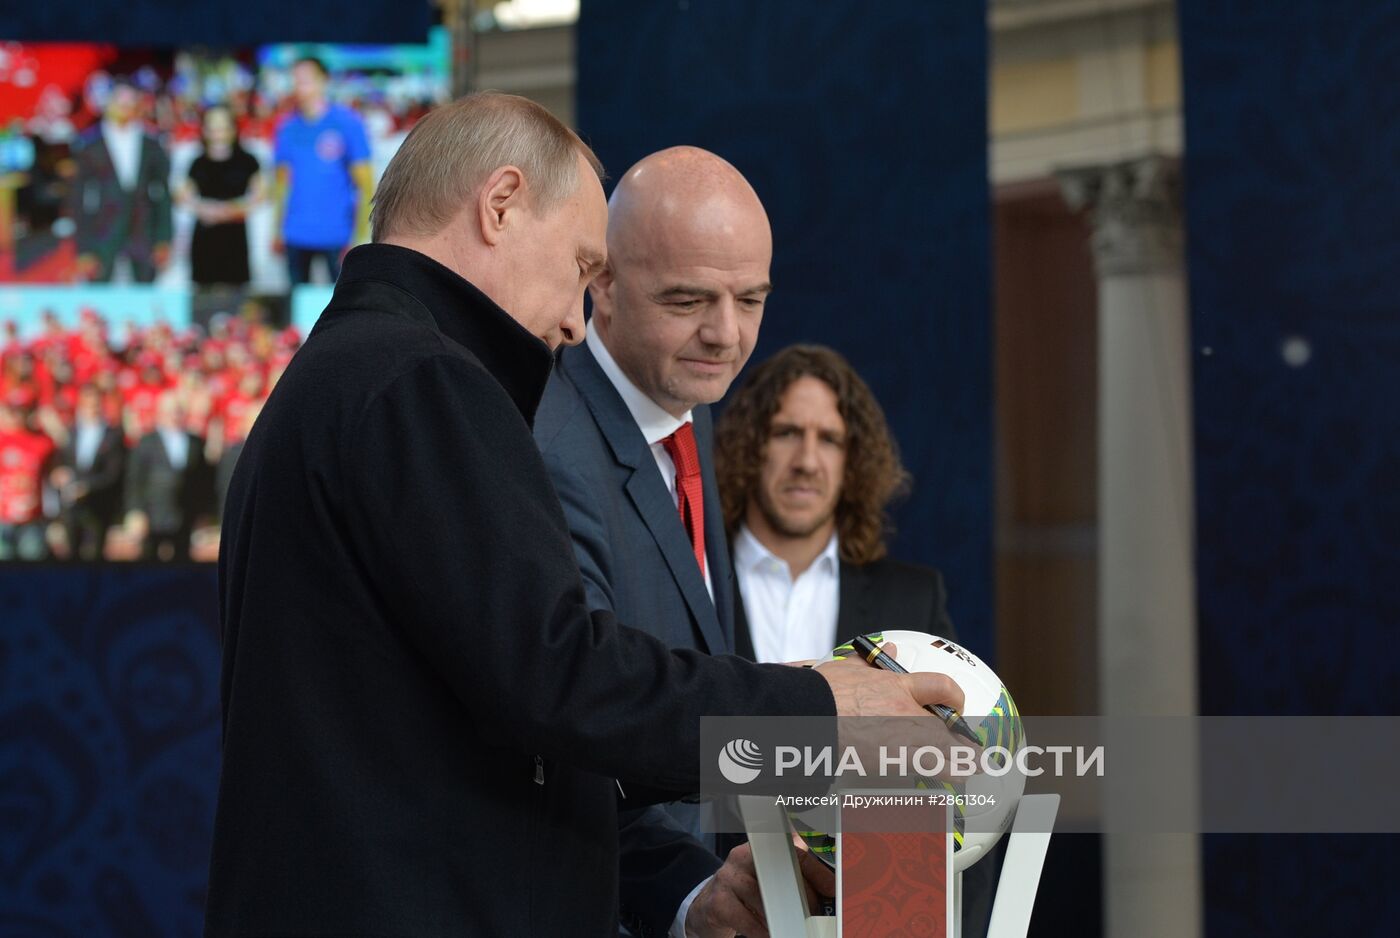 Президент РФ В. Путин принял участие в церемонии старта волонтёрской программы Кубка конфедераций FIFA 2017 и ЧМ по футболу FIFA 2018